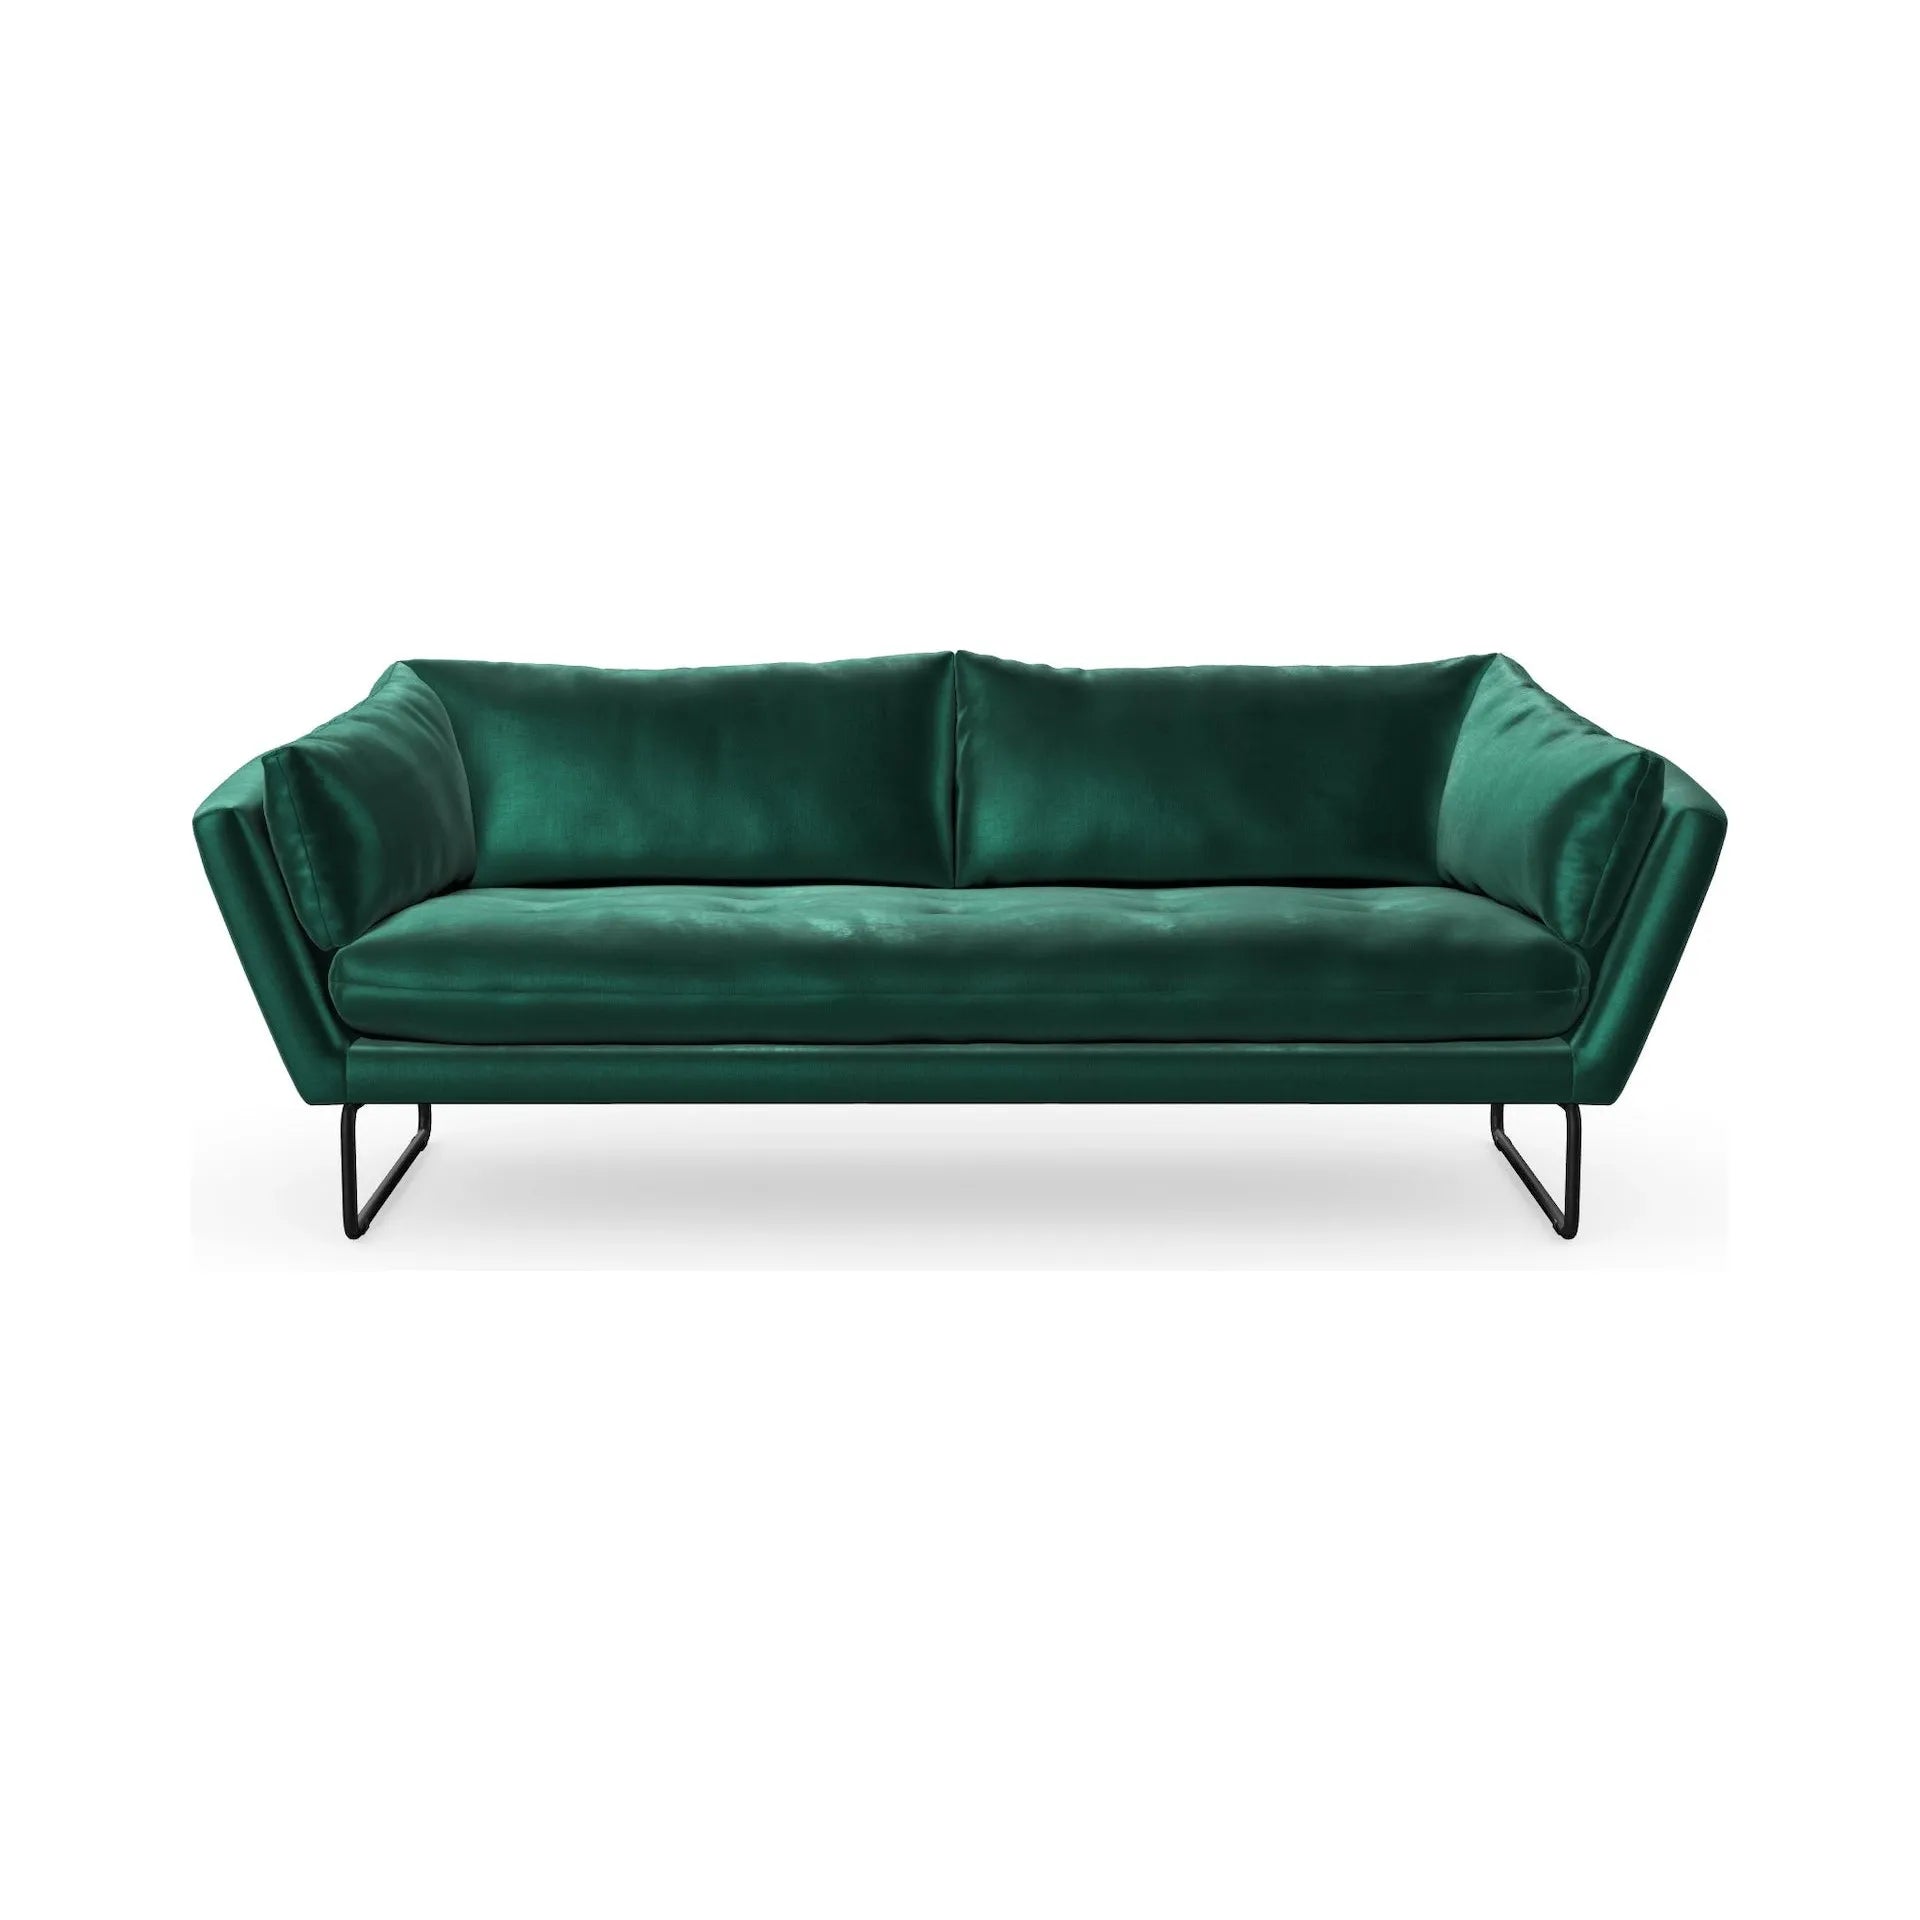 YOKO 3 vietų sofa, pistacijų žalia spalva